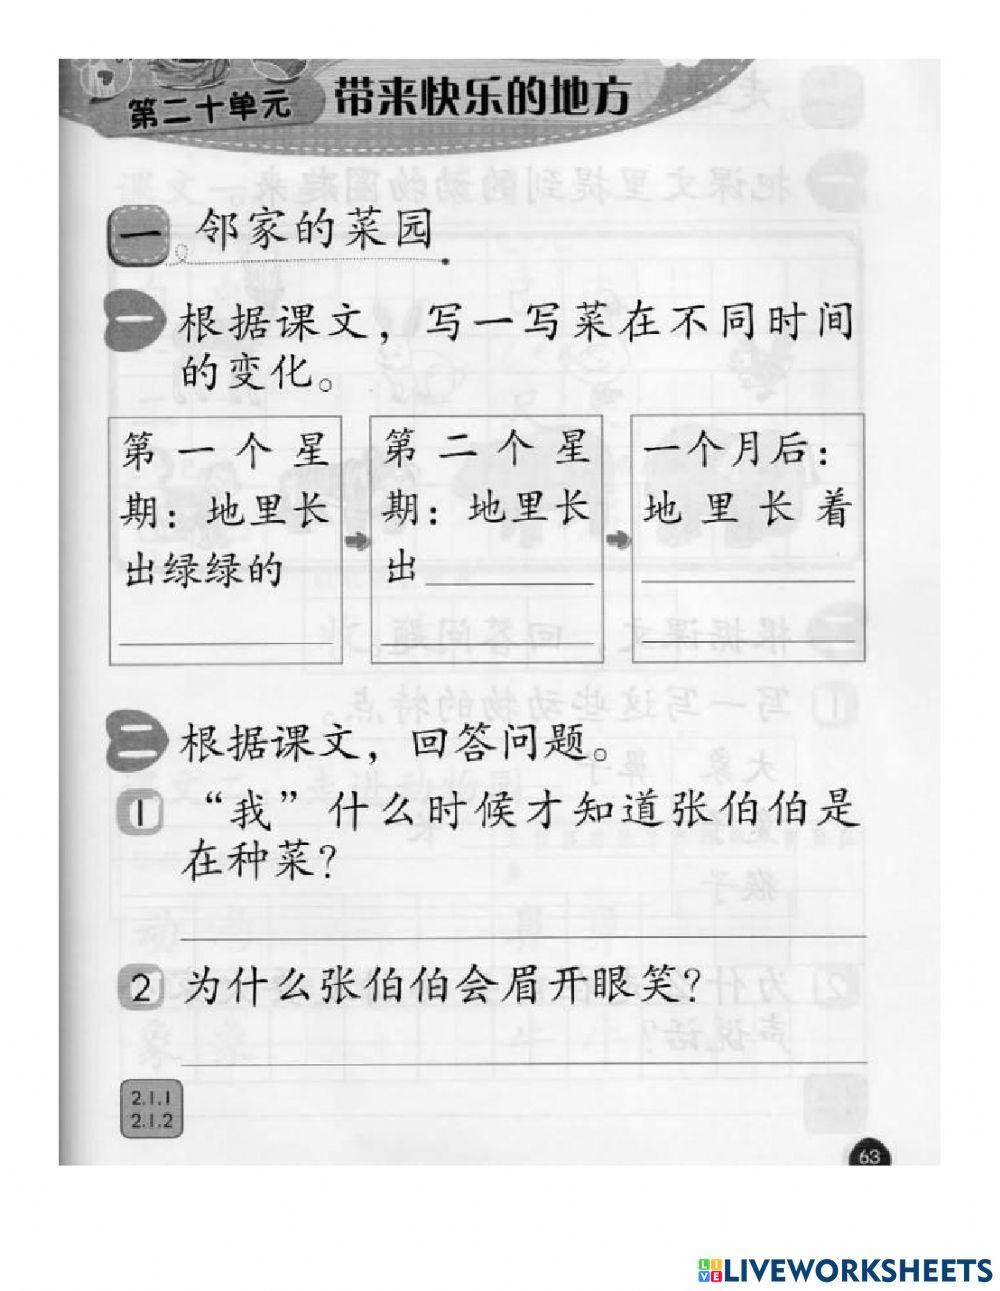 一年级华语作业pg63